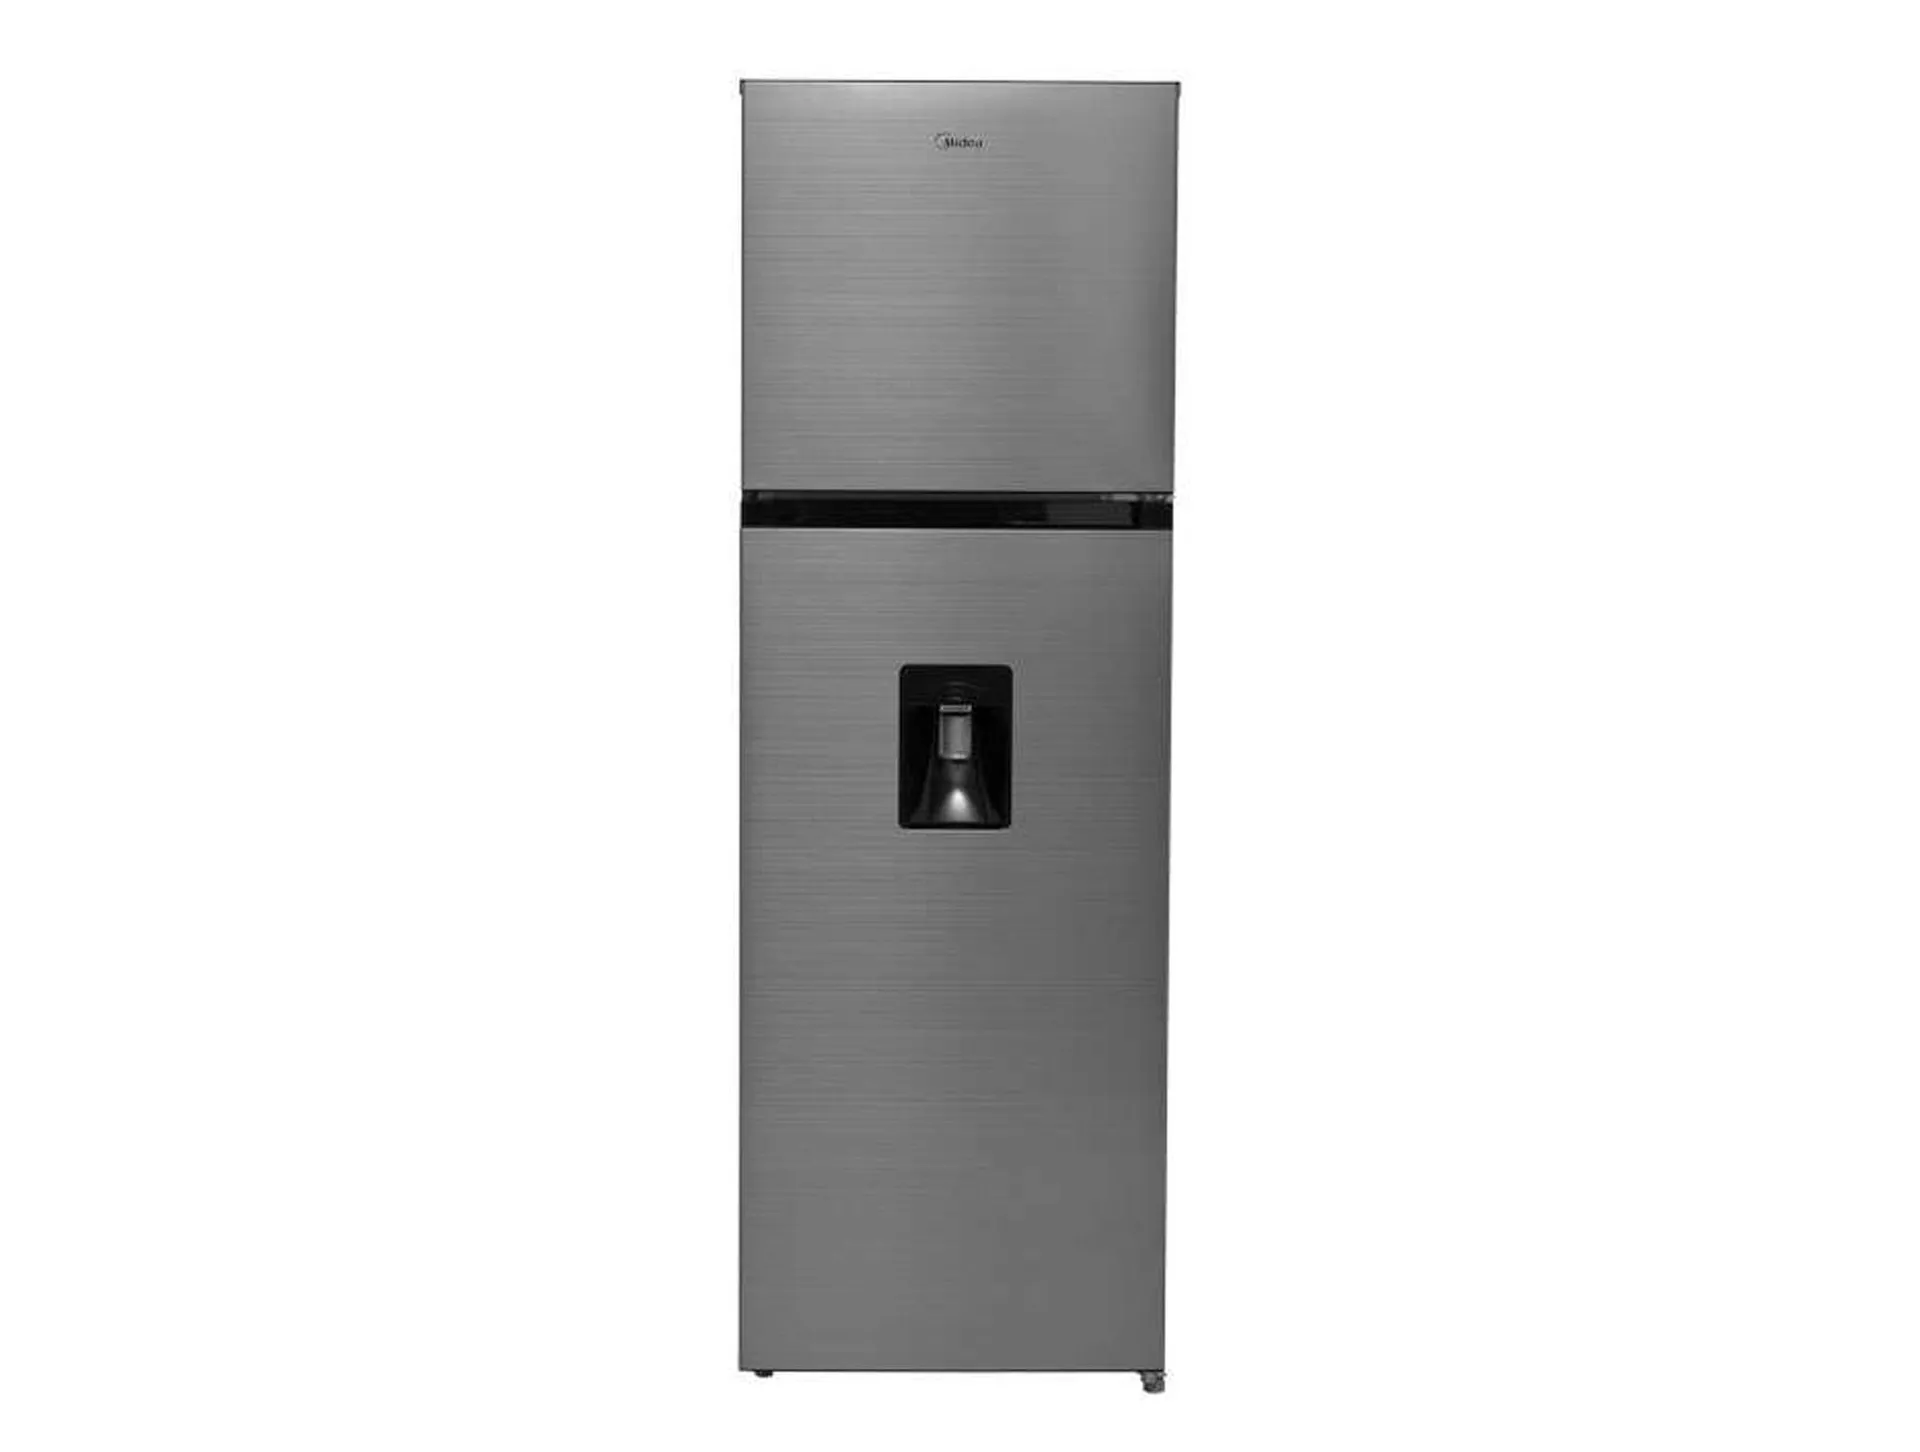 Refrigerador Top mount Midea MDRT280WINDXW